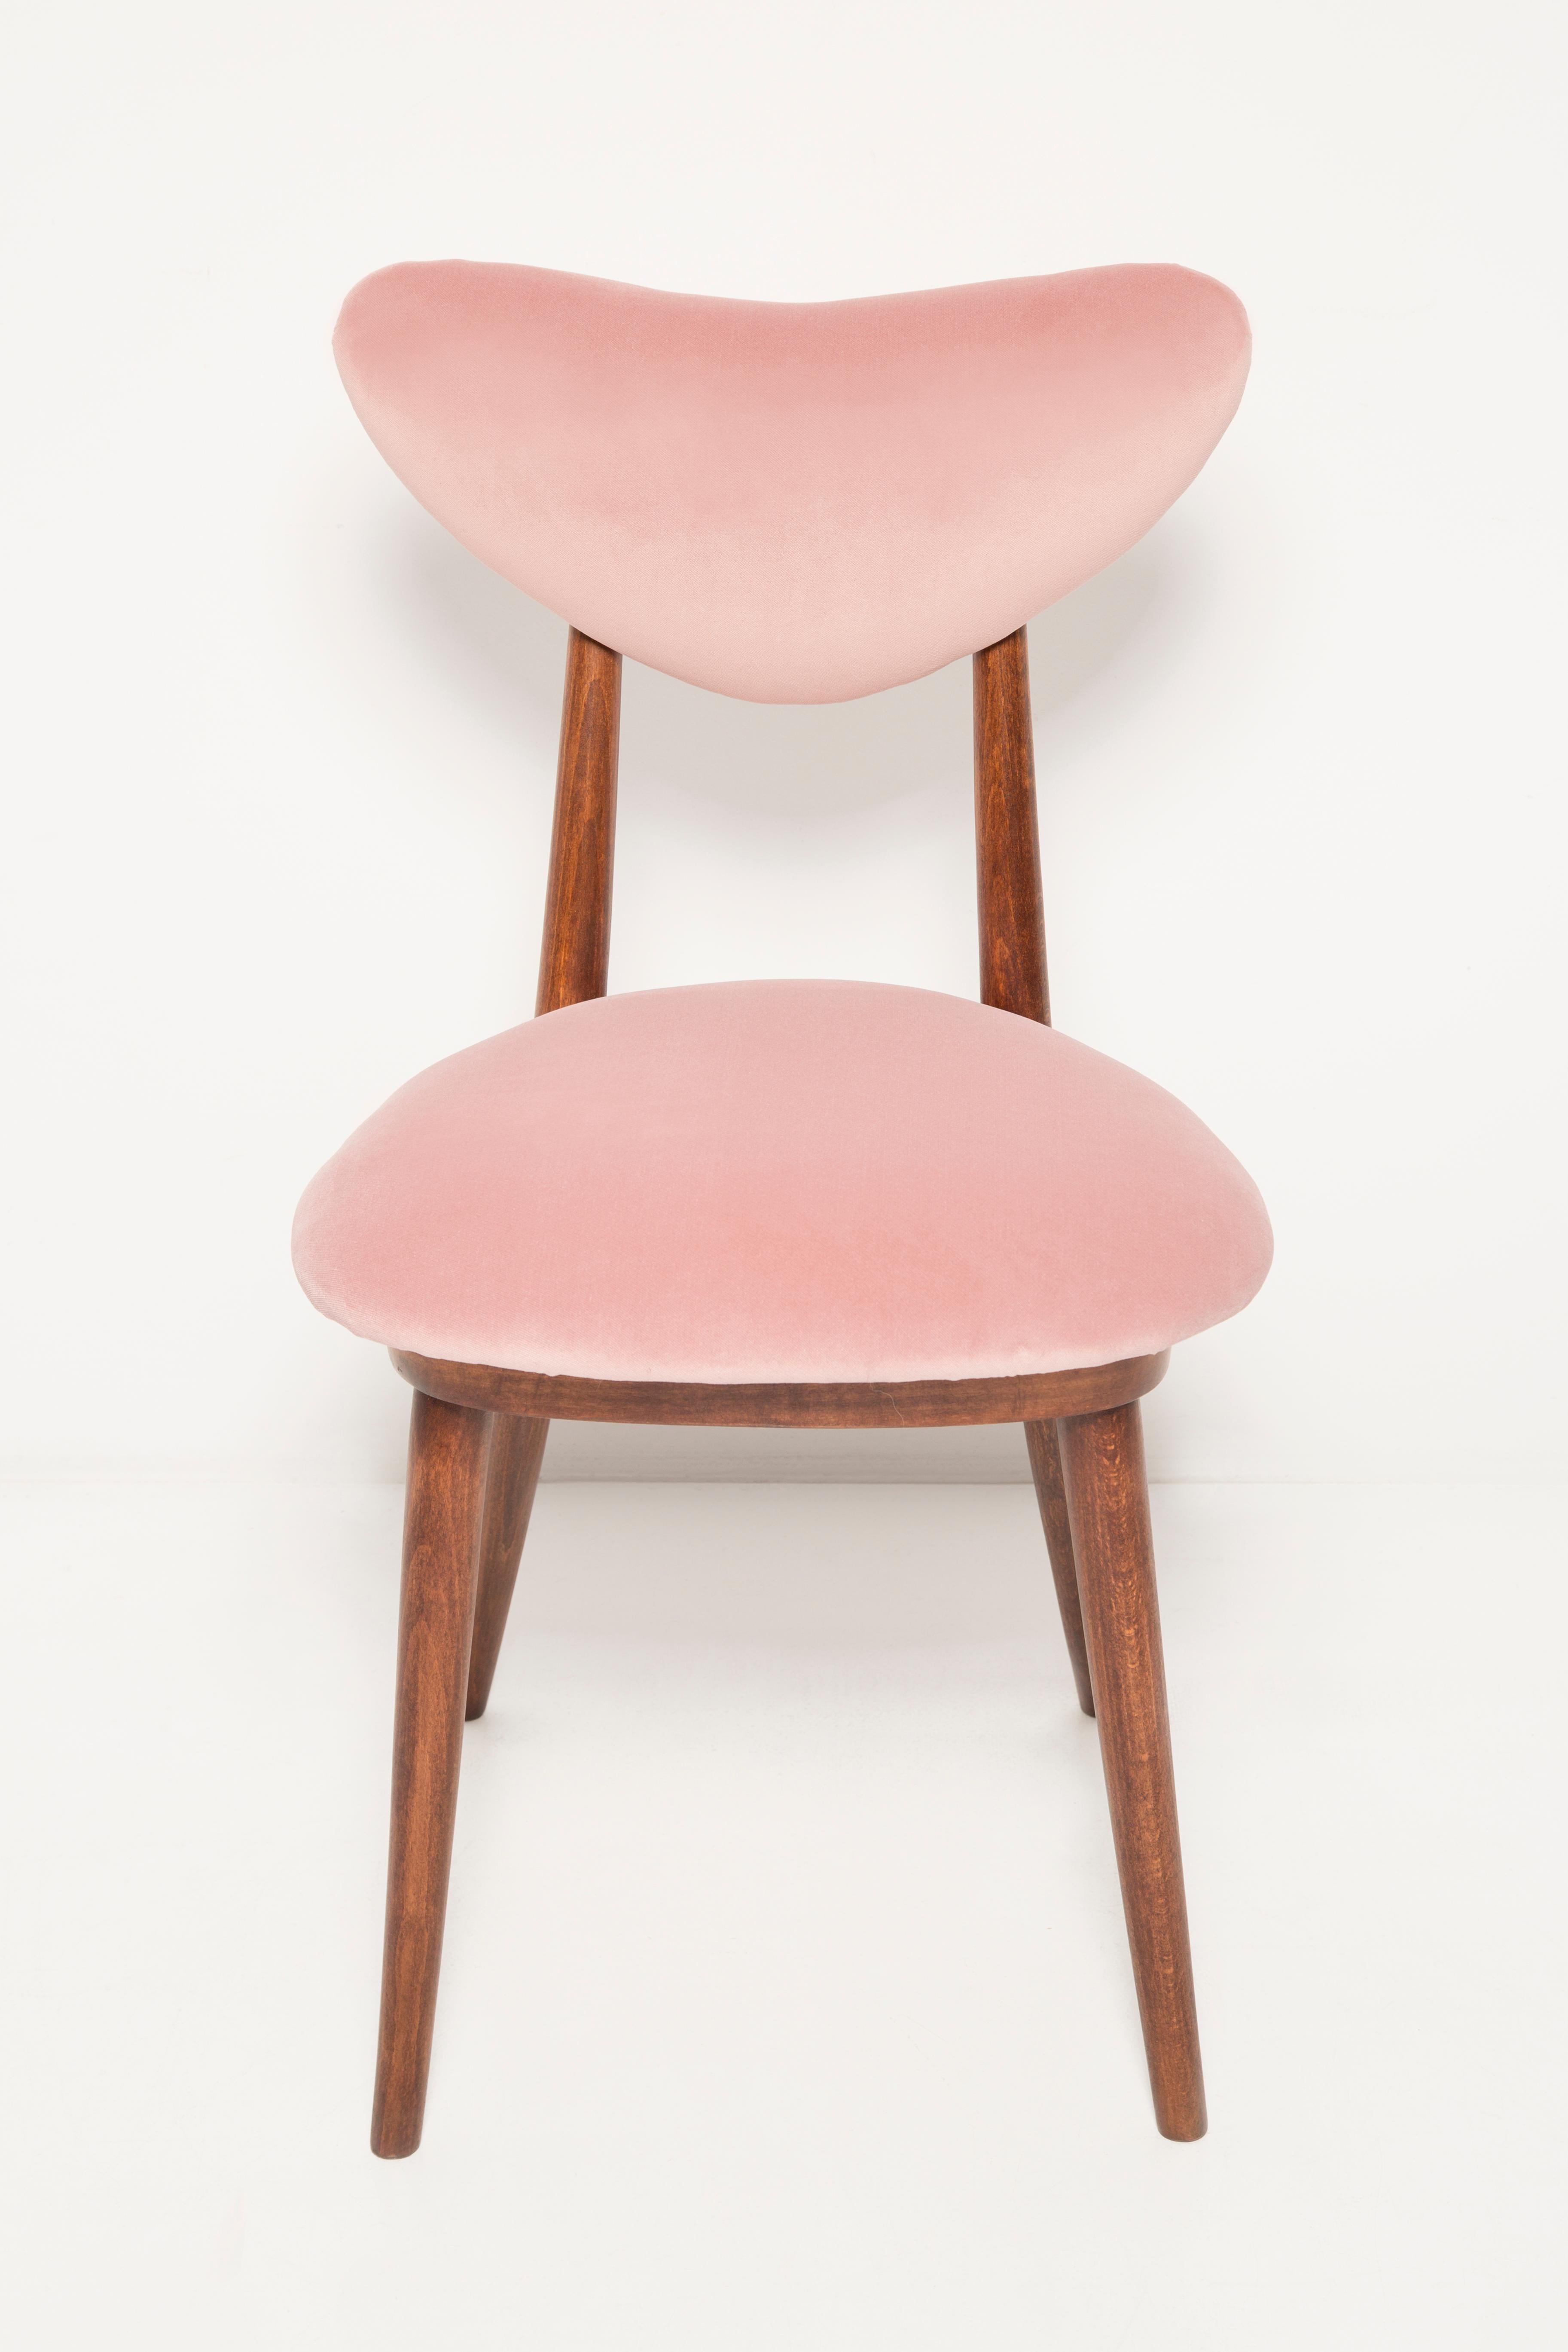 Mid Century Light Pink Velvet Heart Chair, Europe, 1960s For Sale 1